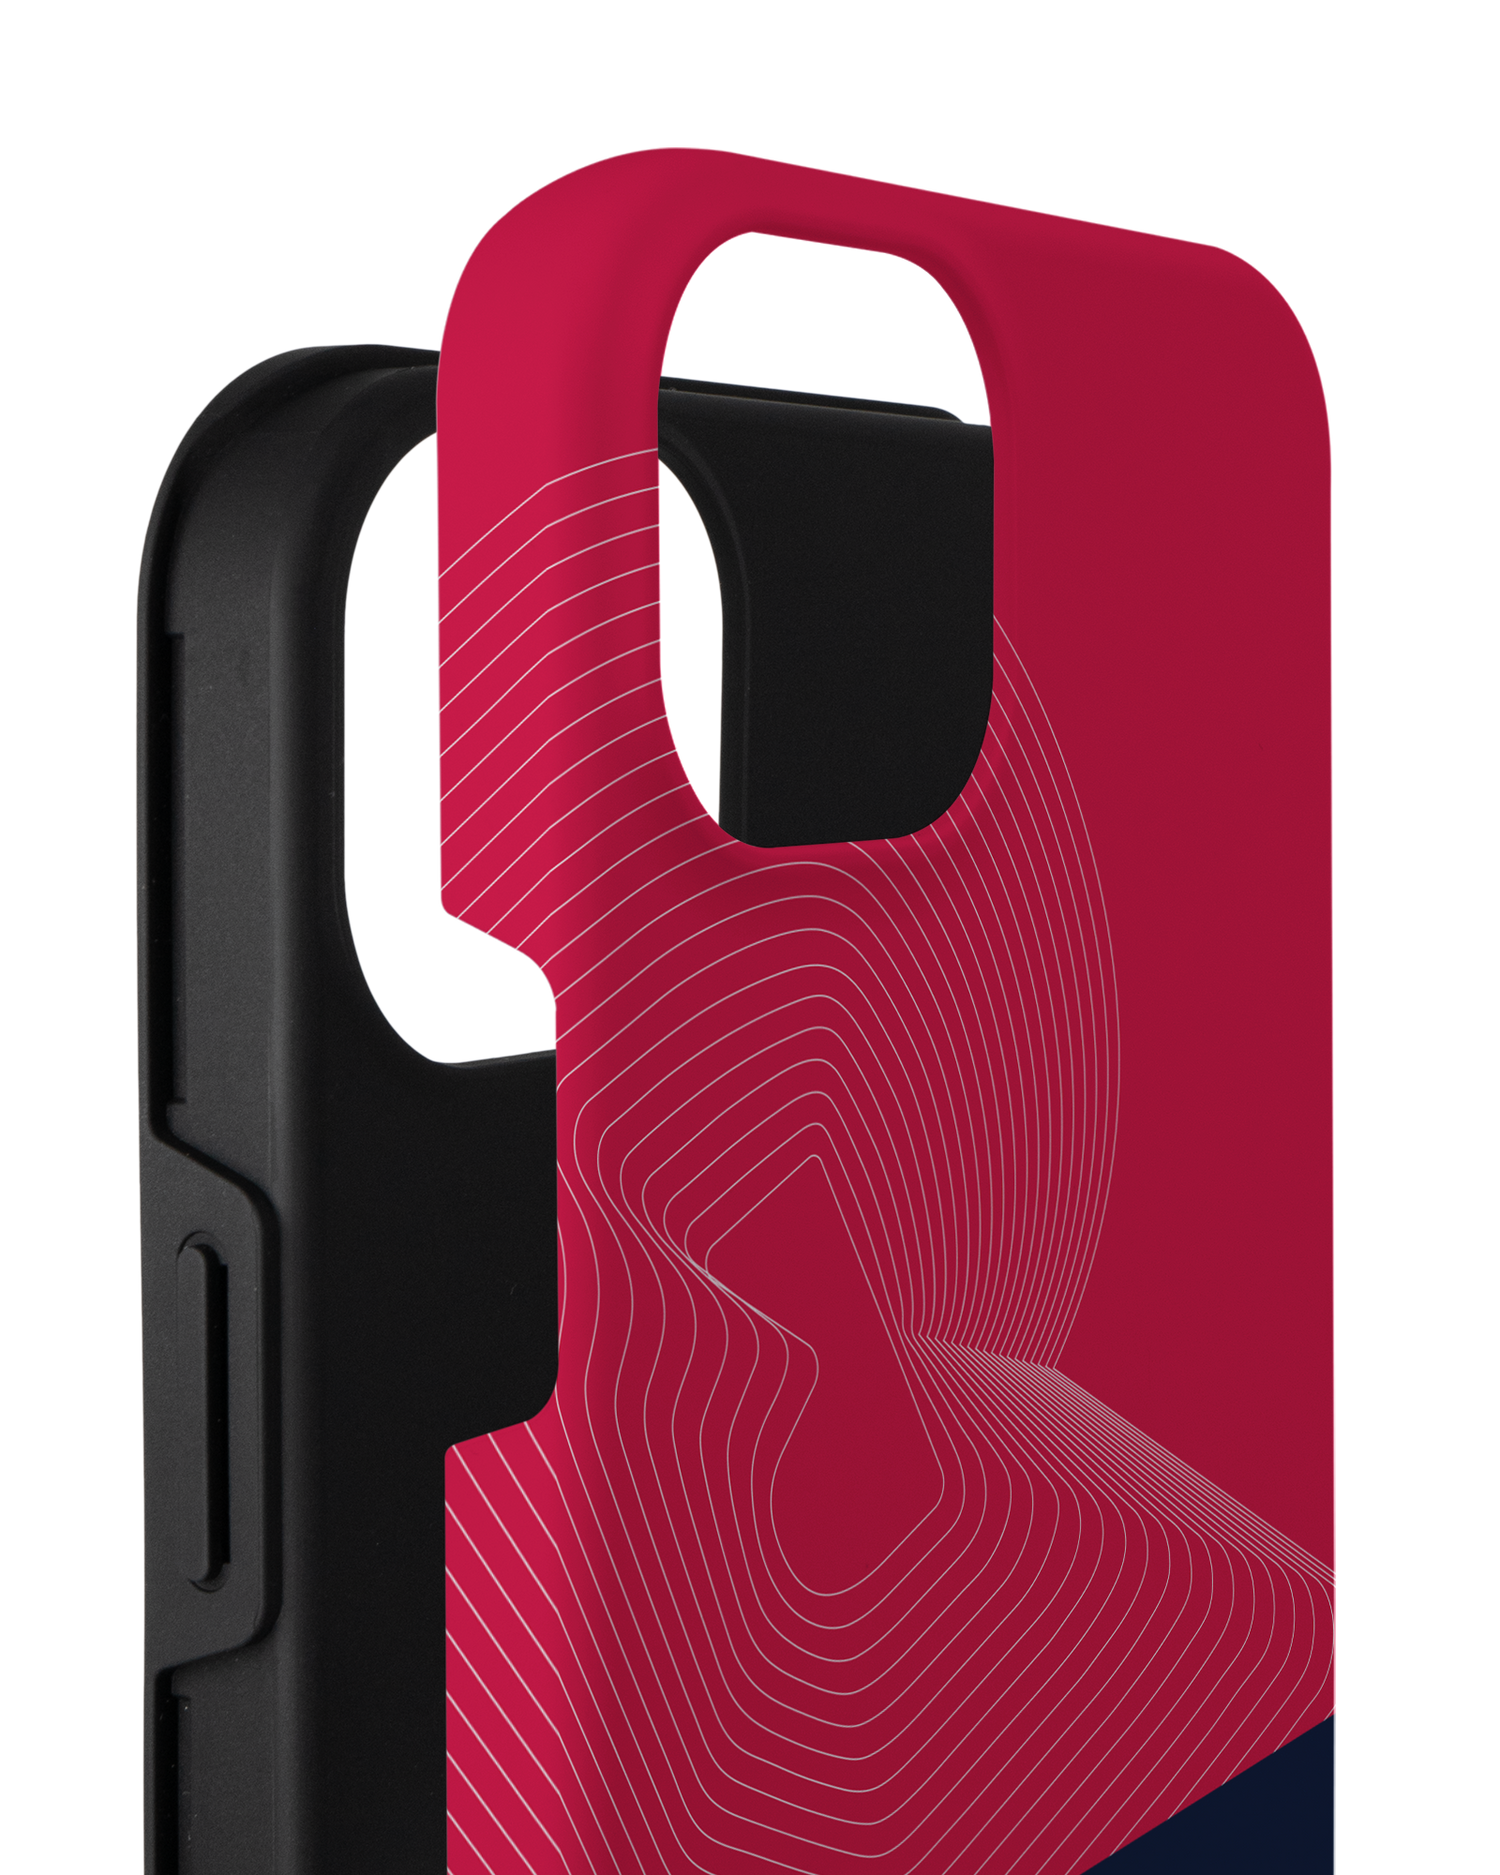 Red Bull MOBILE Red Premium Phone Case Apple iPhone 14 Plus